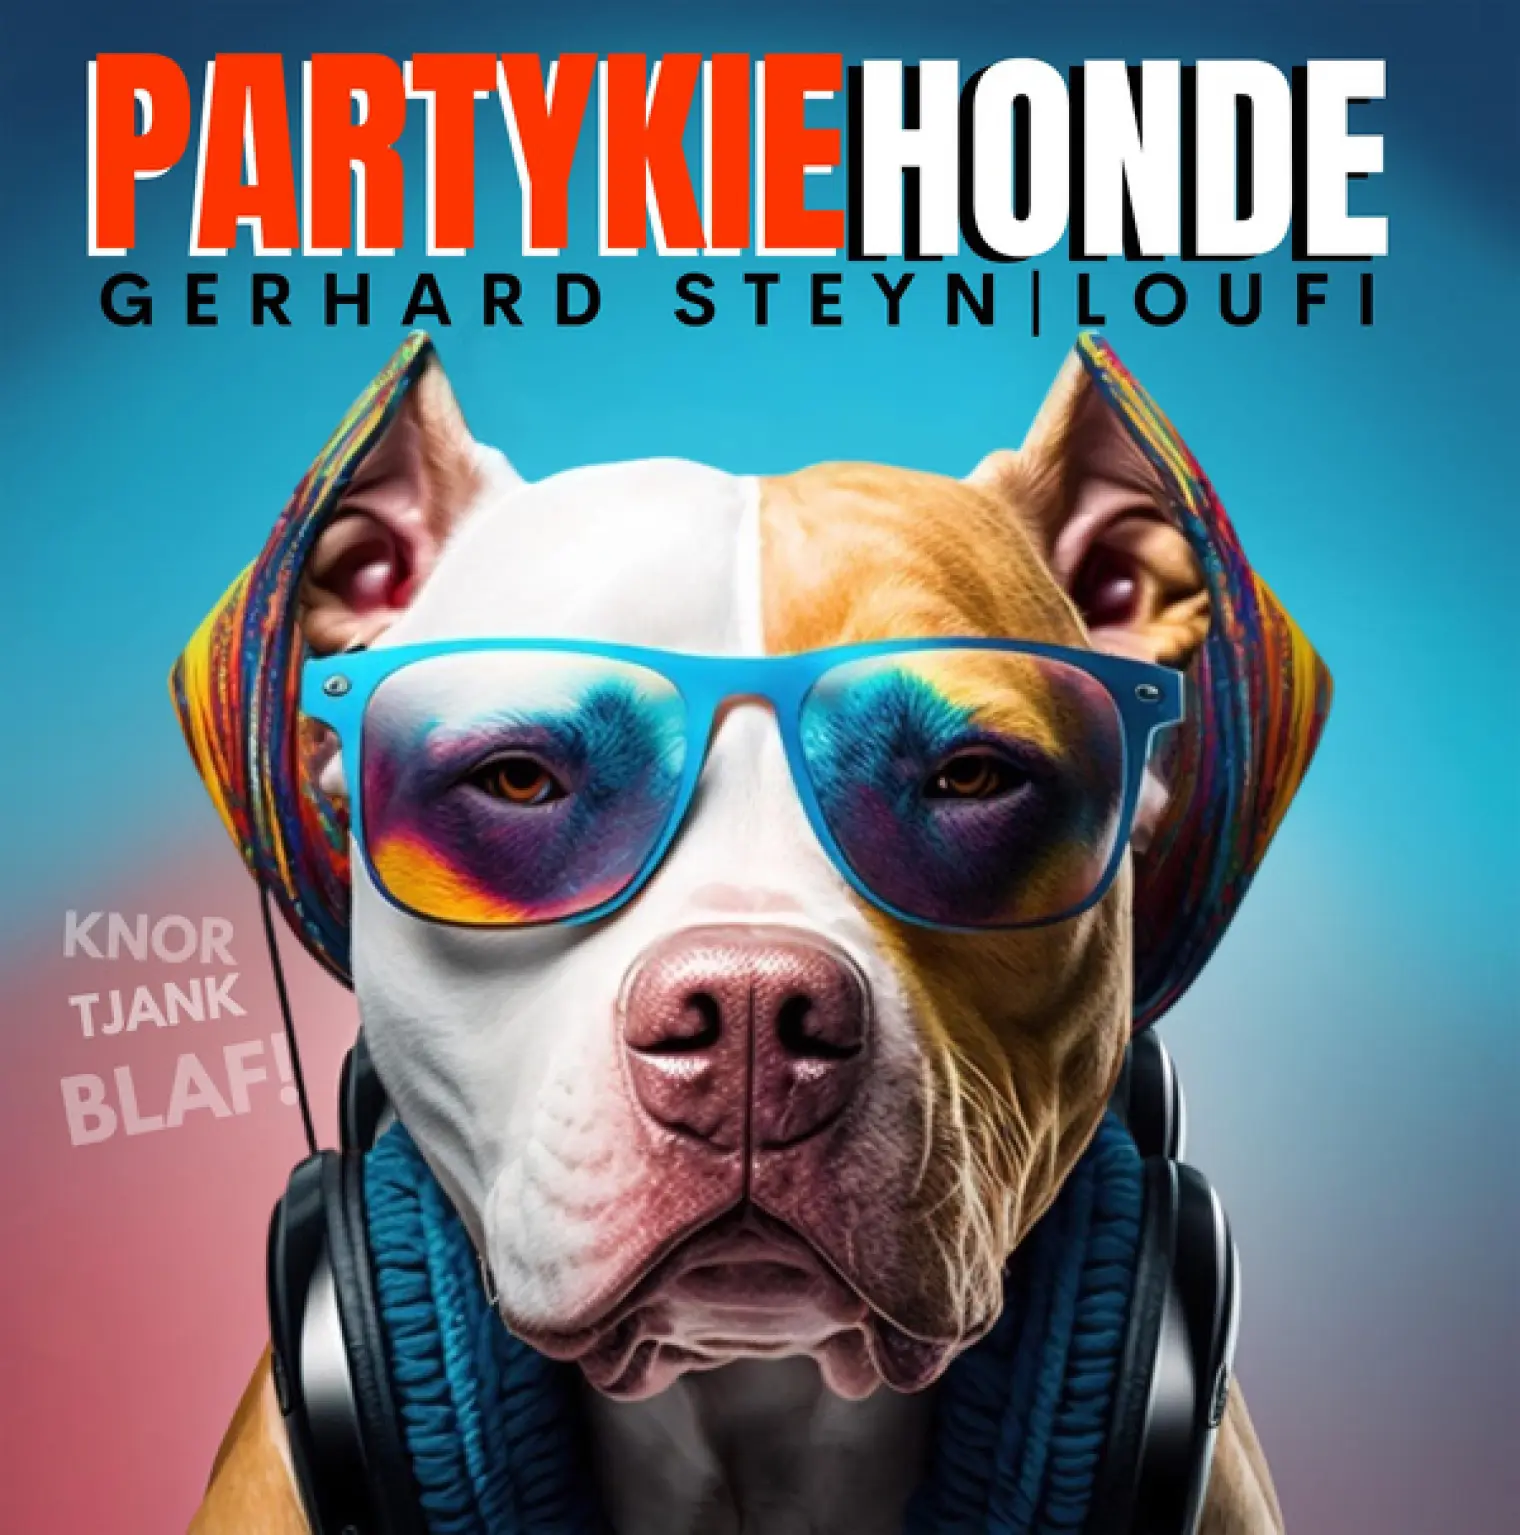 Partykiehonde -  Gerhard Steyn 